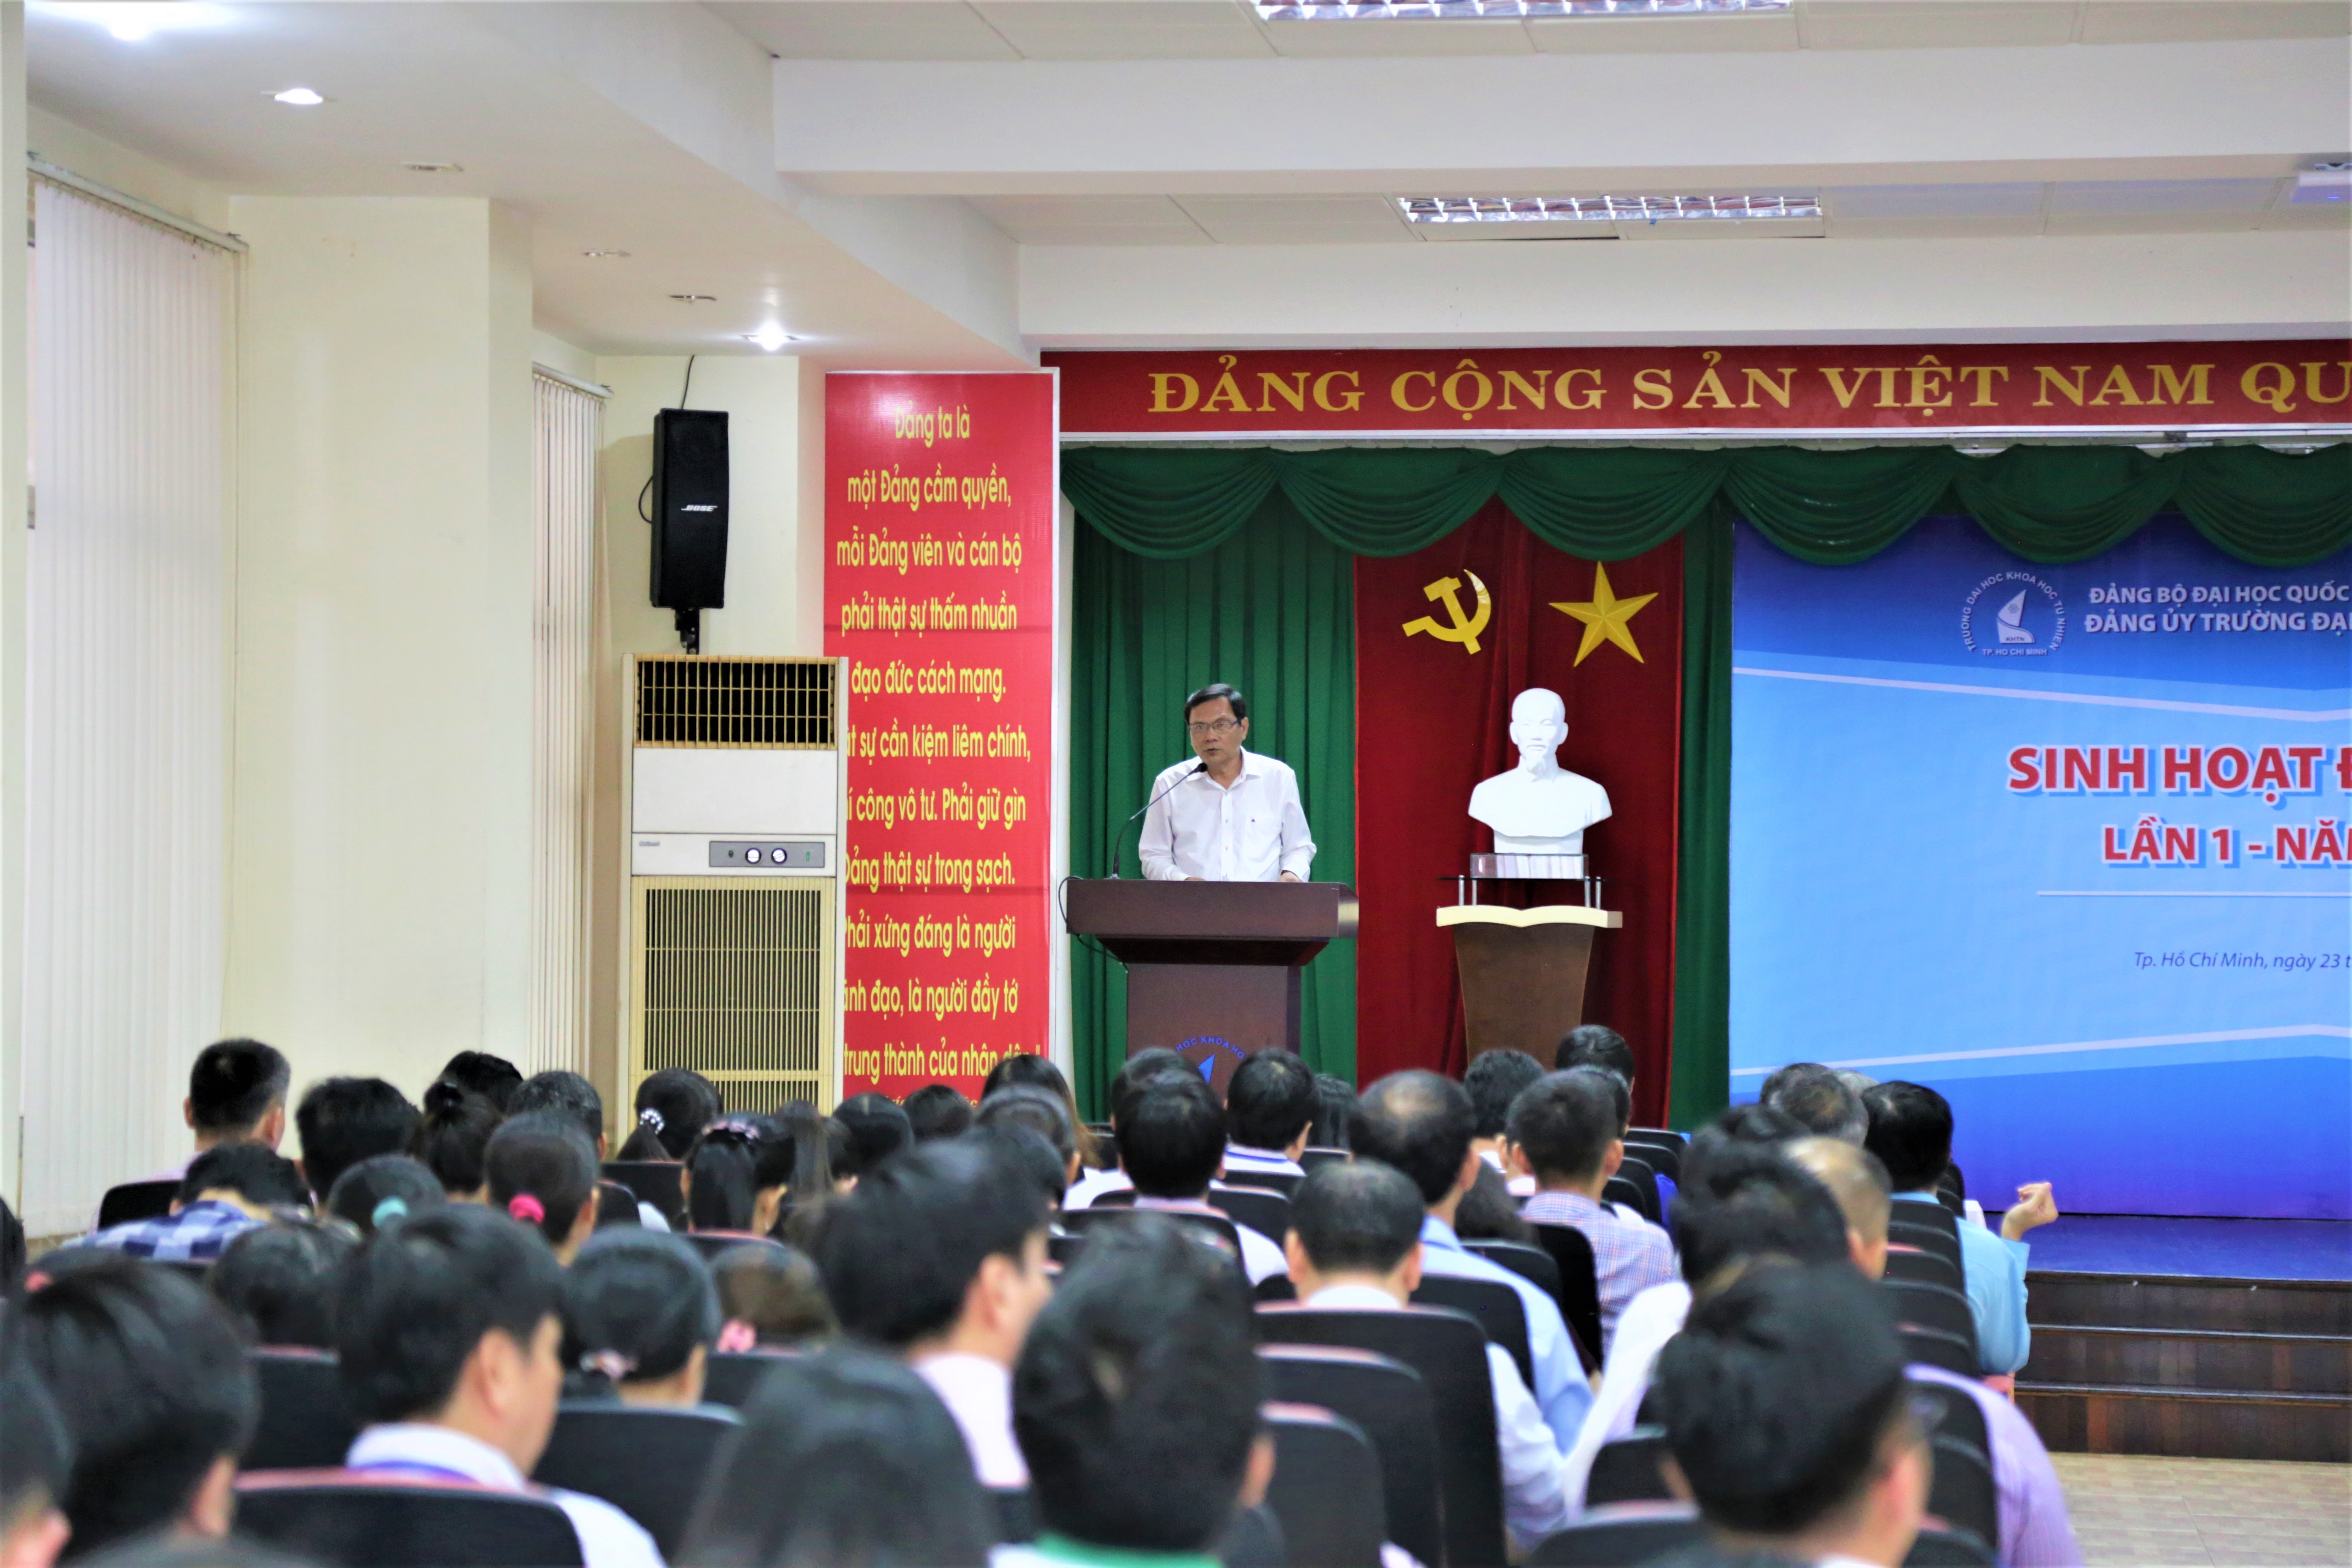 Sinh hoạt Đảng bộ lần 1 năm 2019 với chuyên đề: “50 năm thực hiện Di chúc Chủ tịch Hồ Chí Minh” và công bố quyết định nhân sự Phó Bí thư Đảng ủy Trường Đại học Khoa học Tự nhiên, ĐHQG-HCM